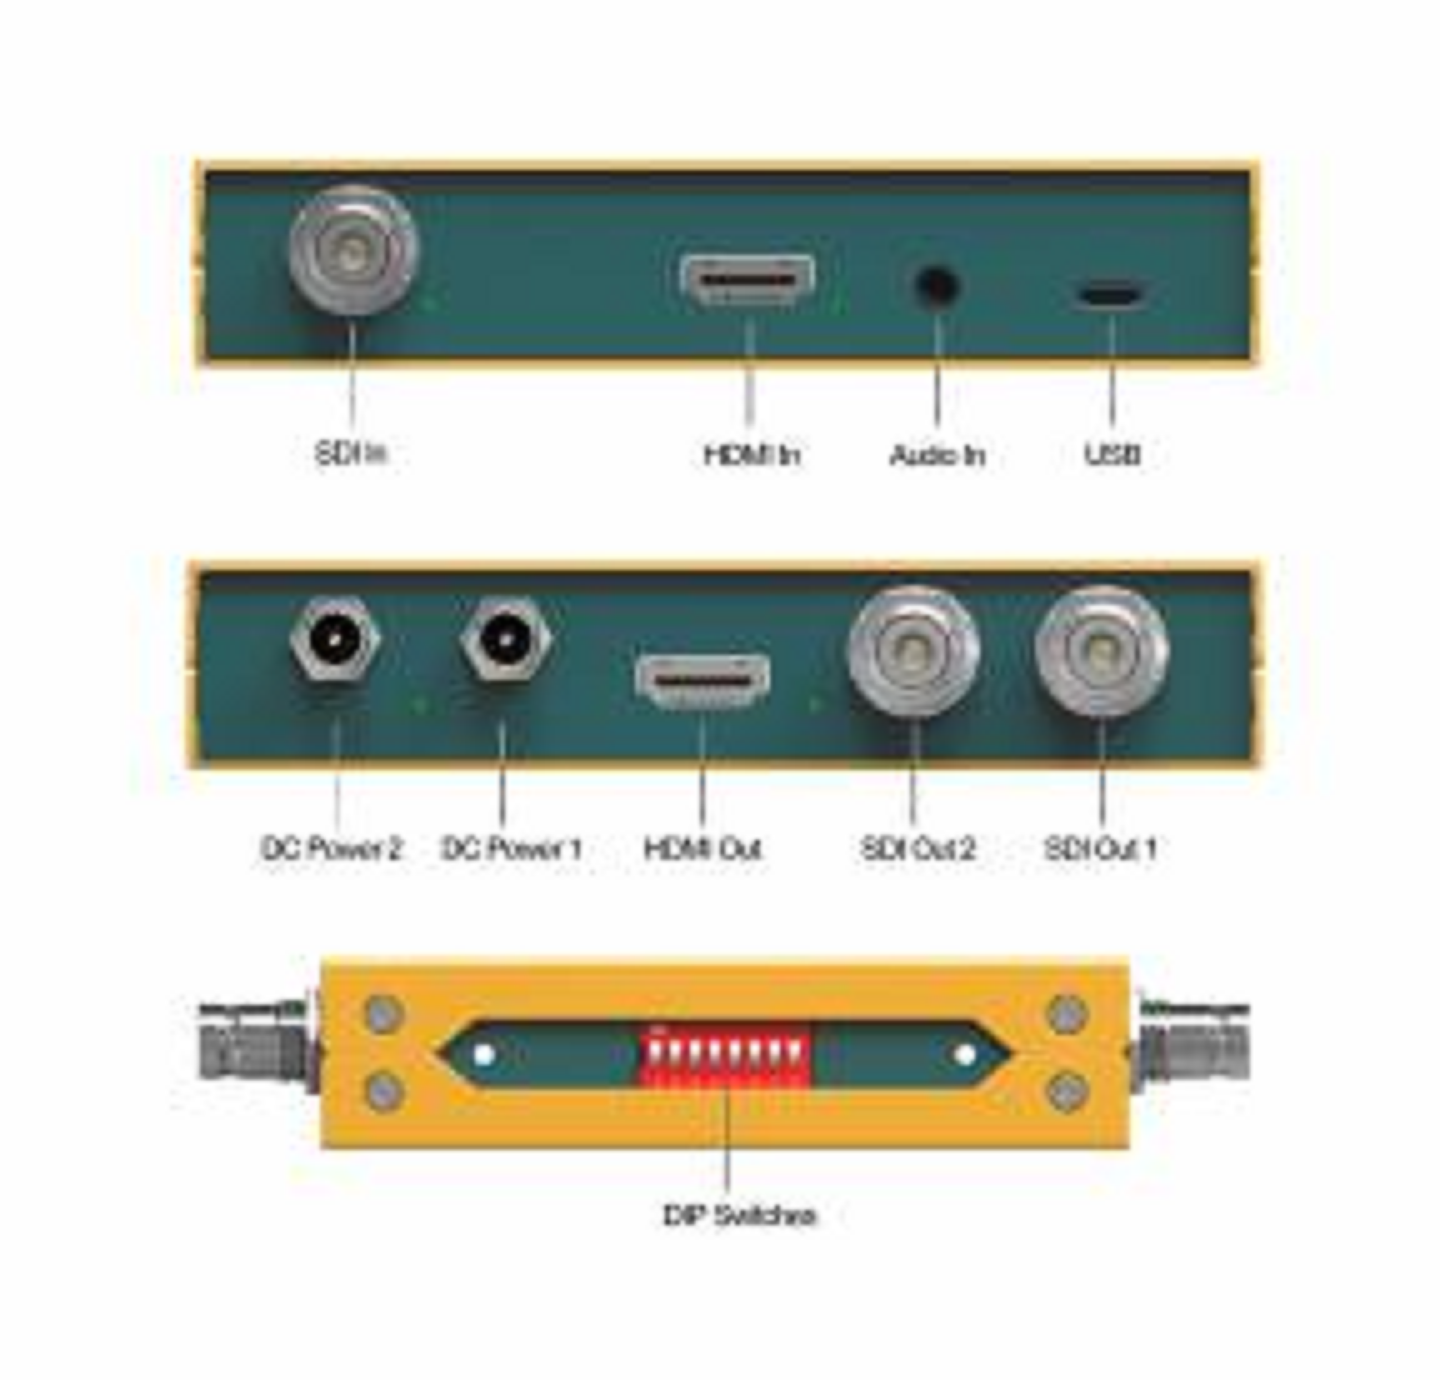 Bộ chuyển đổi Avmatrix SC2030 (Chéo 3G-SDI / HDMI) – Hàng Chính hãng